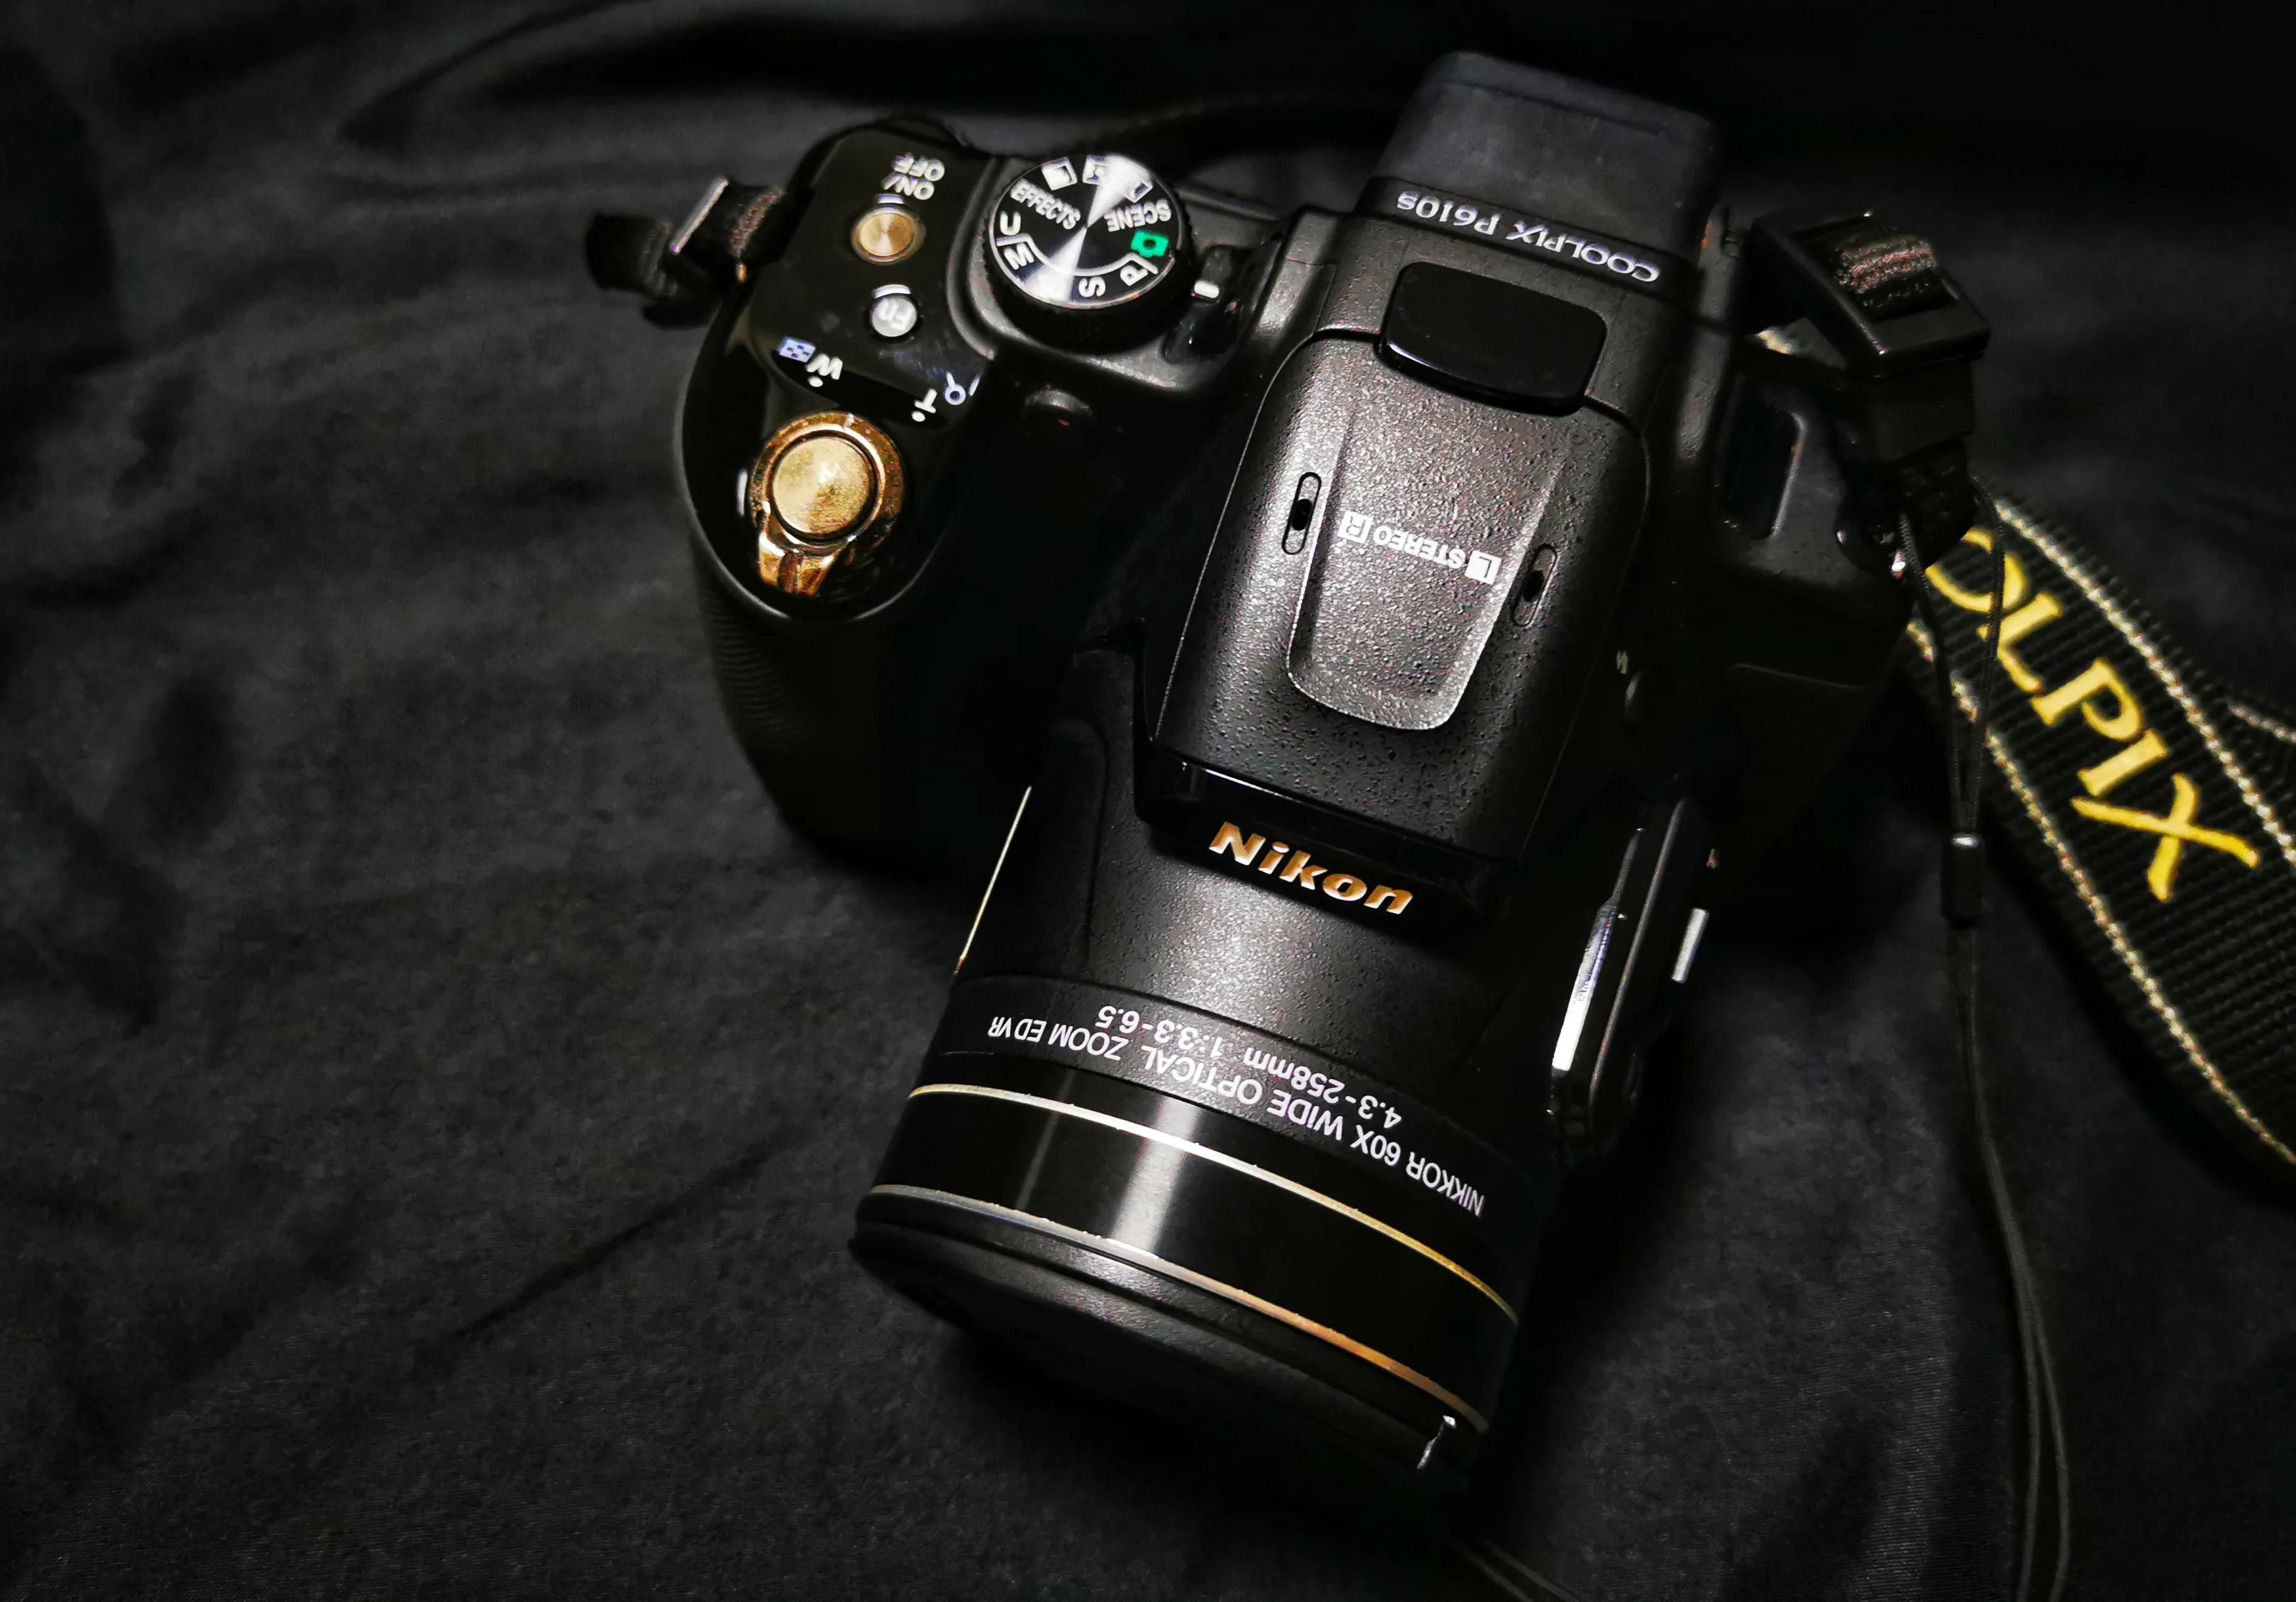 尼康p610s,拍摄等效焦距24-1440mm, 60倍光学变焦,光学变焦与数码相机